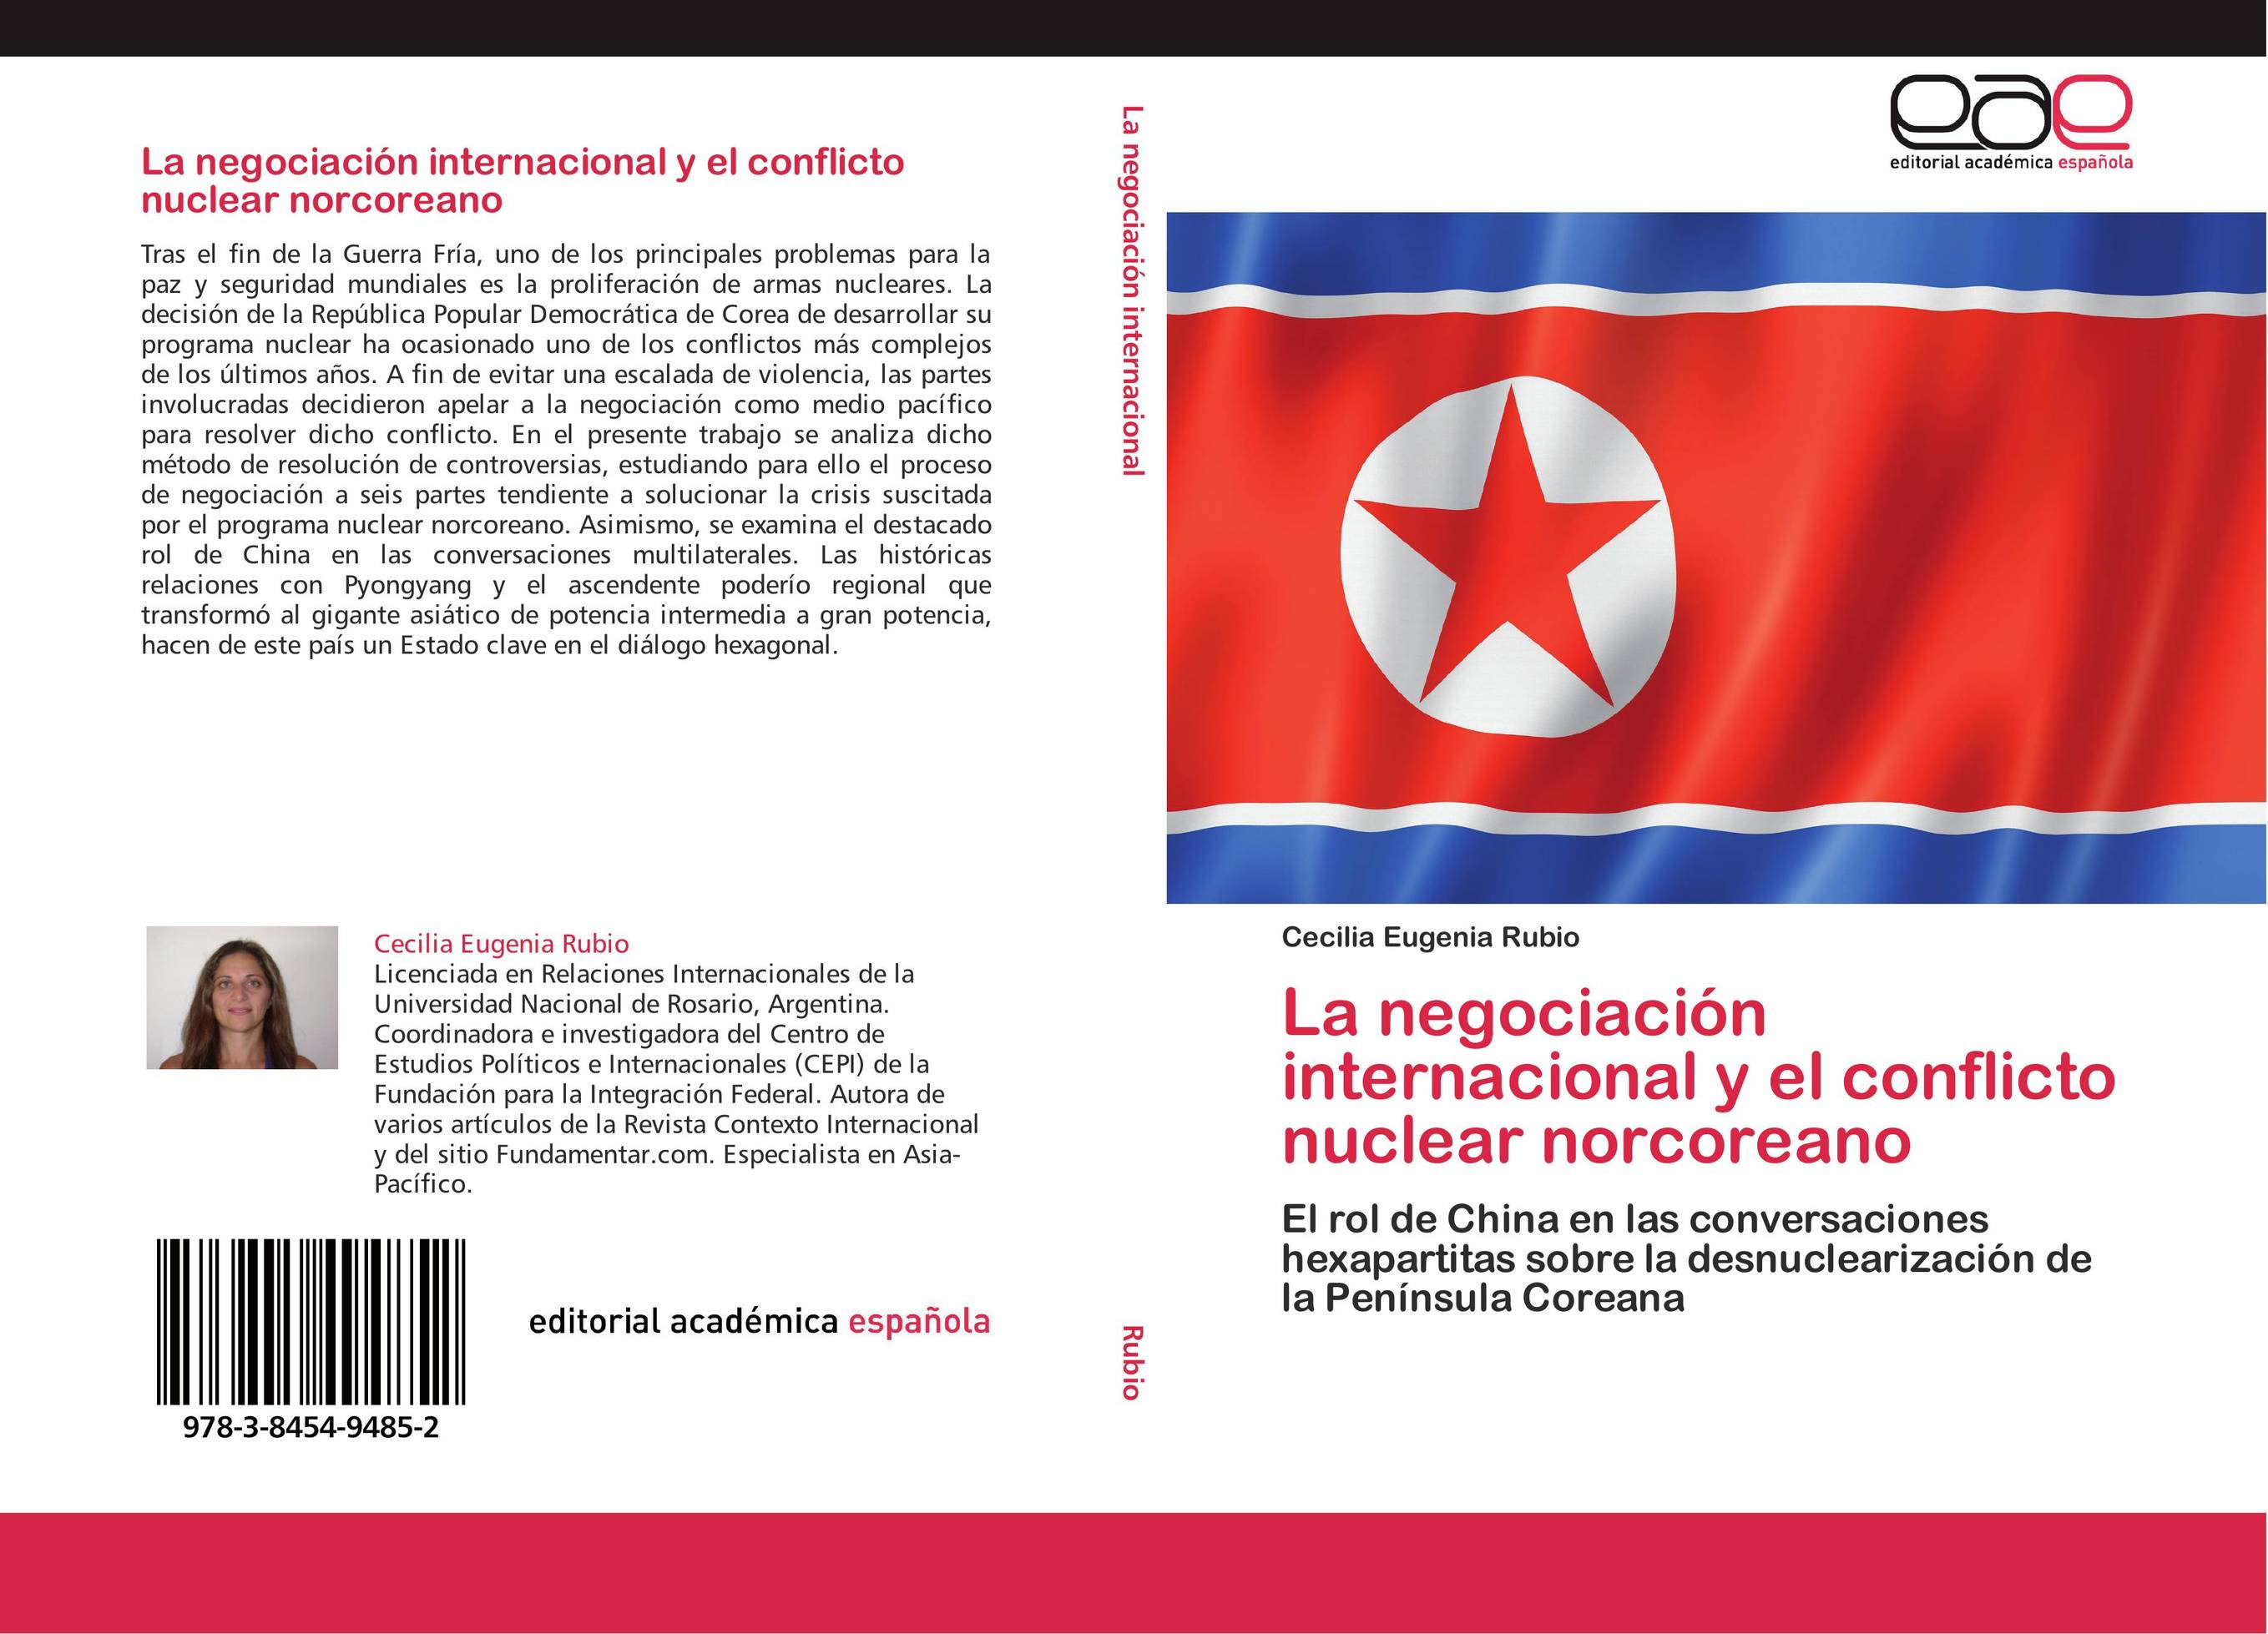 La negociación internacional y el conflicto nuclear norcoreano